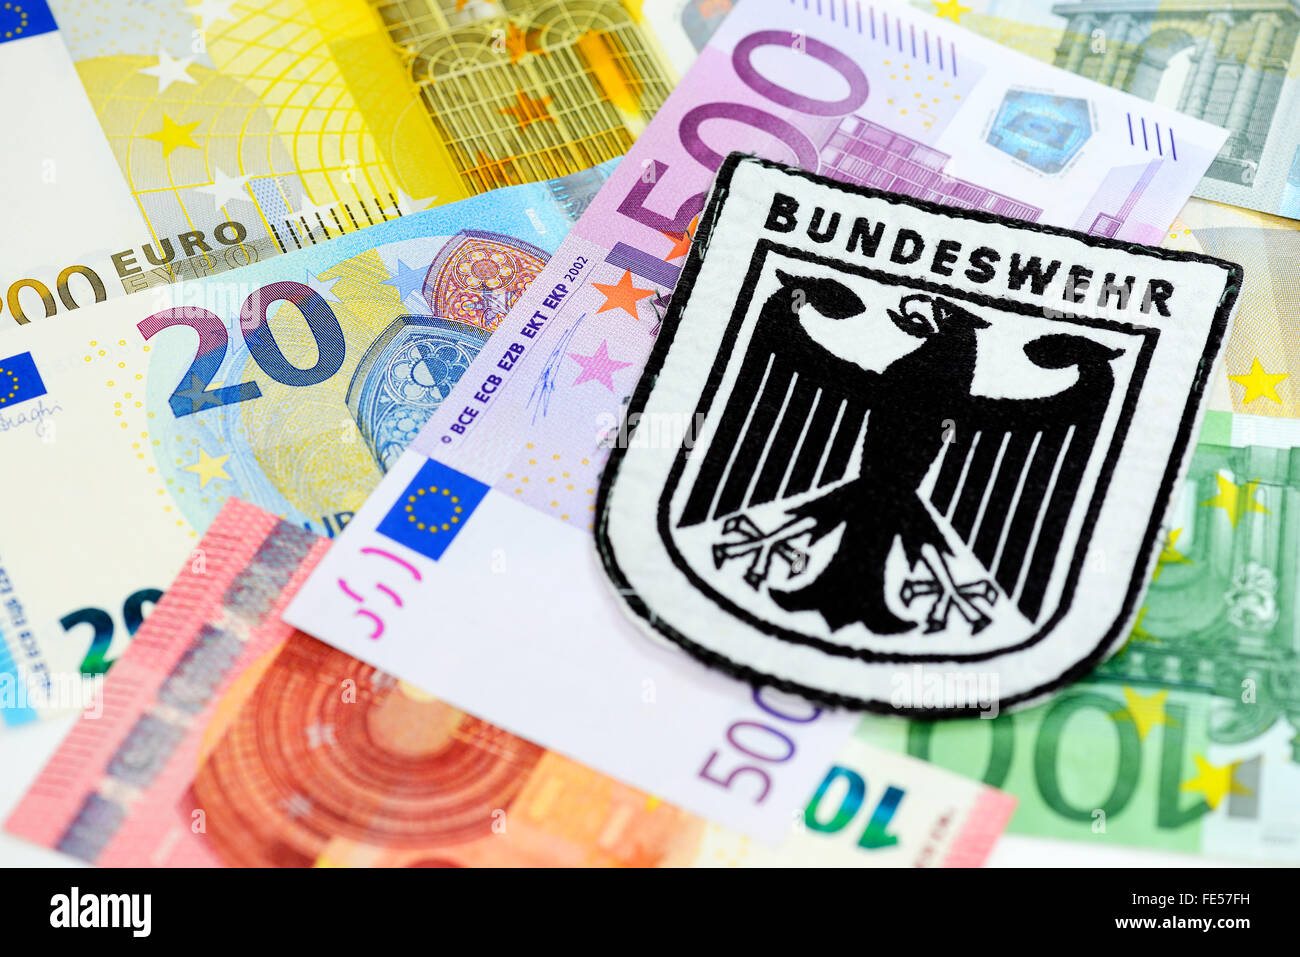 Emblème des Forces armées fédérales allemandes sur les billets en euros, les dépenses de la défense Banque D'Images